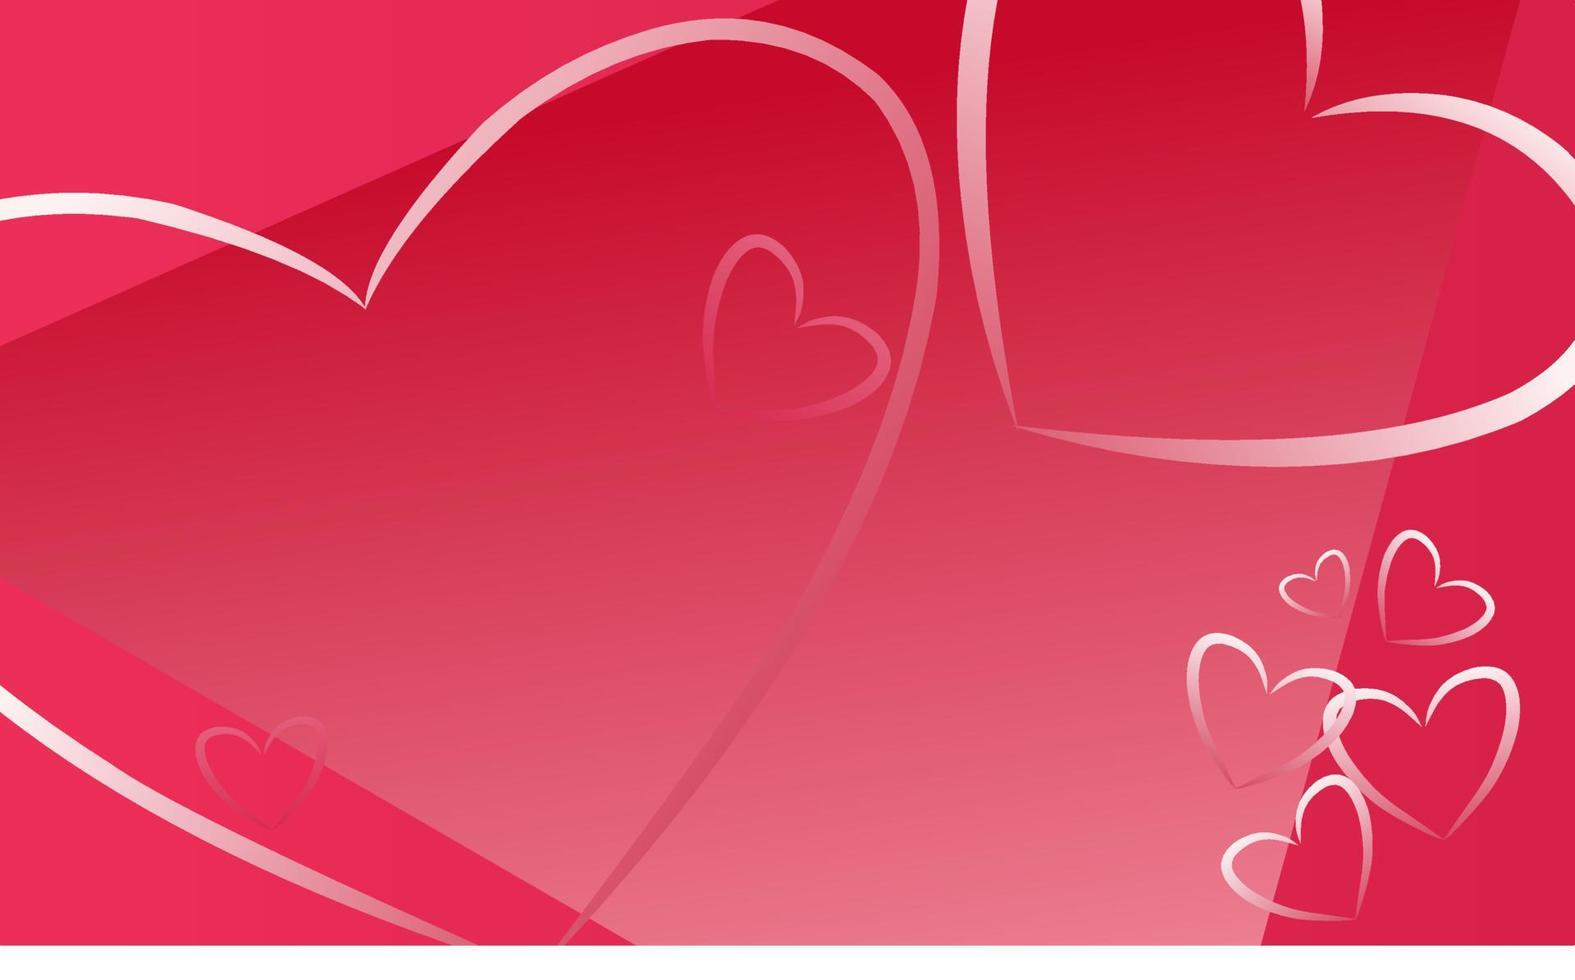 fond de la saint-valentin. design de fond happy valentines day avec des éléments en forme de coeur romantique. espace pour le texte. convient aux cartes de vœux, bannières, affiches, etc. vecteur